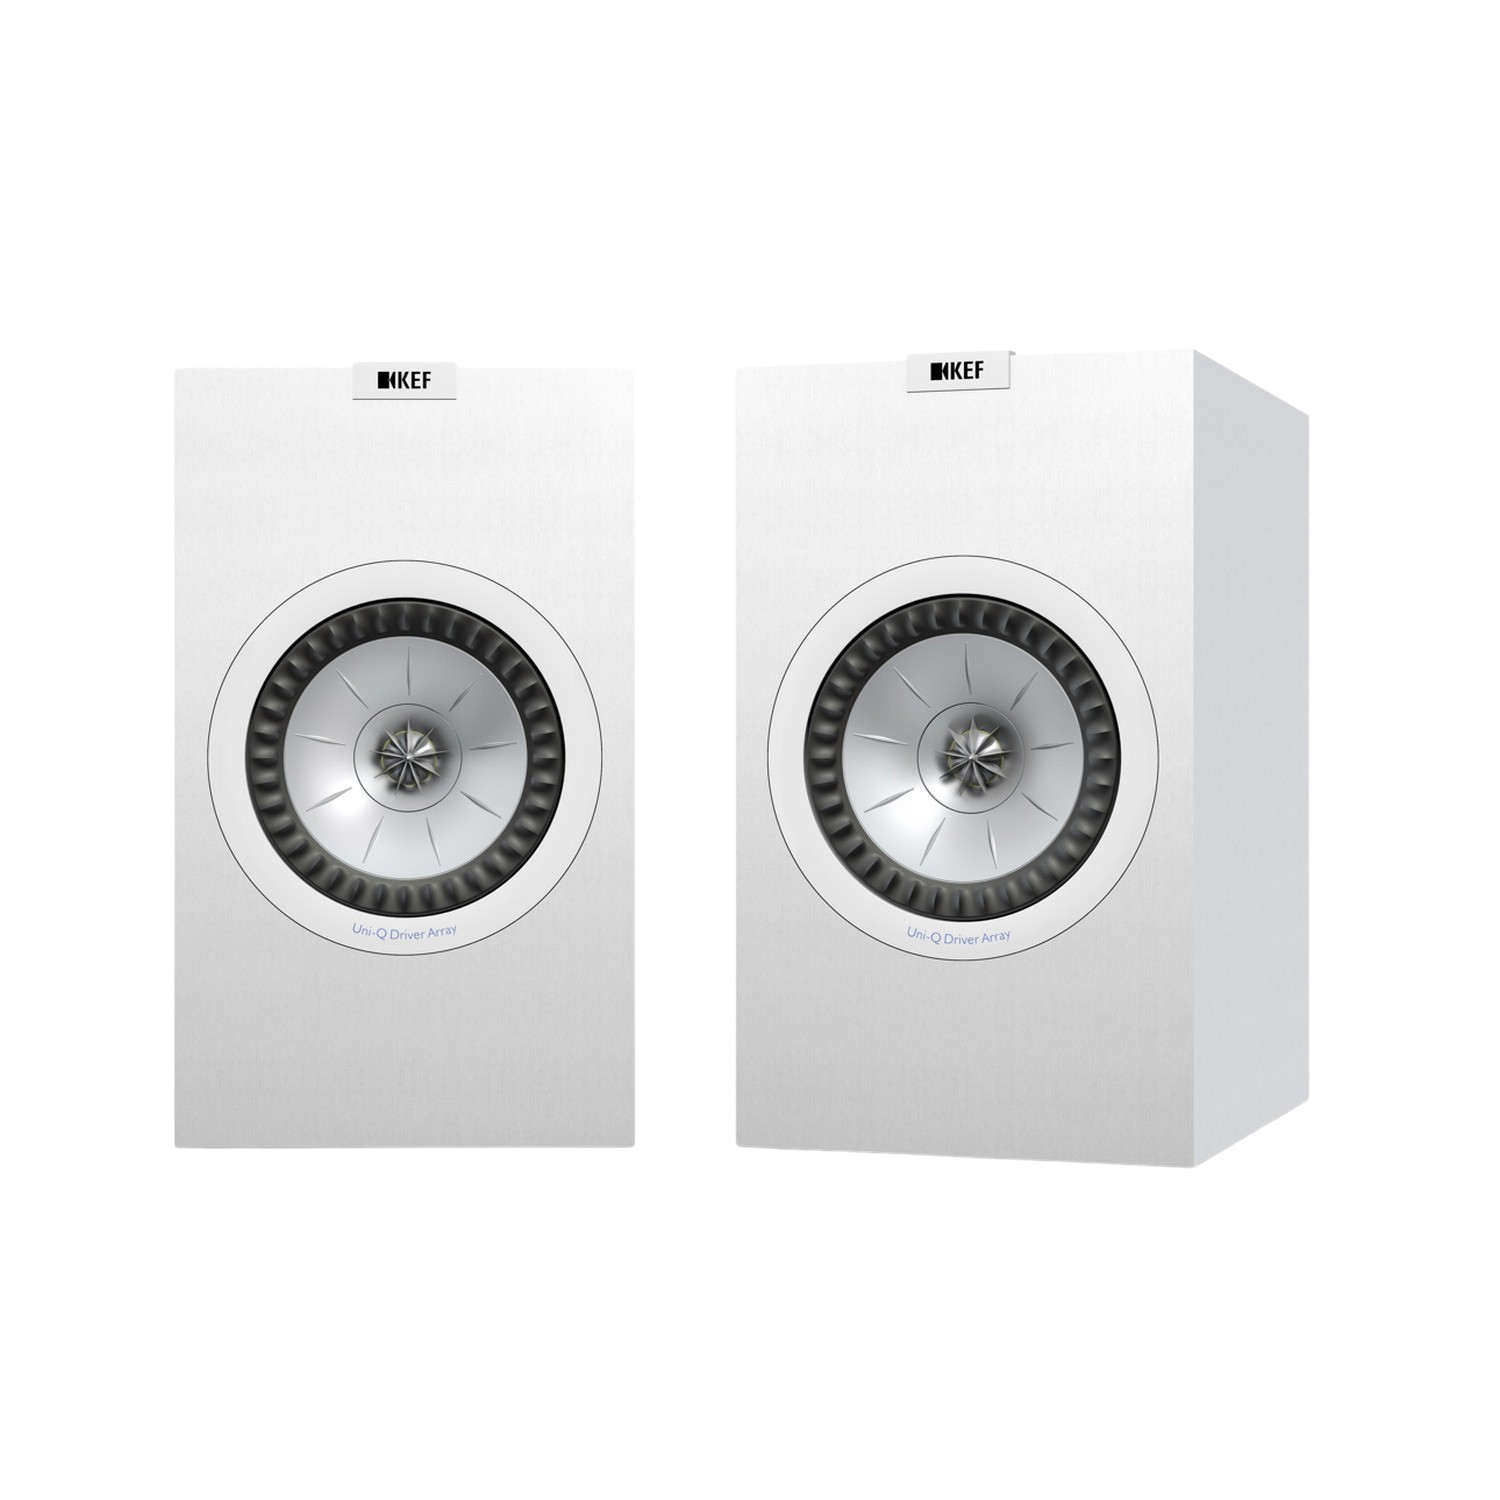 Kef Q350 De altavoces blanca hifi cine en casa estantería cajas gama 2 pareja sistema audio 15 120w 87db 8 ohm 63hz 28khz